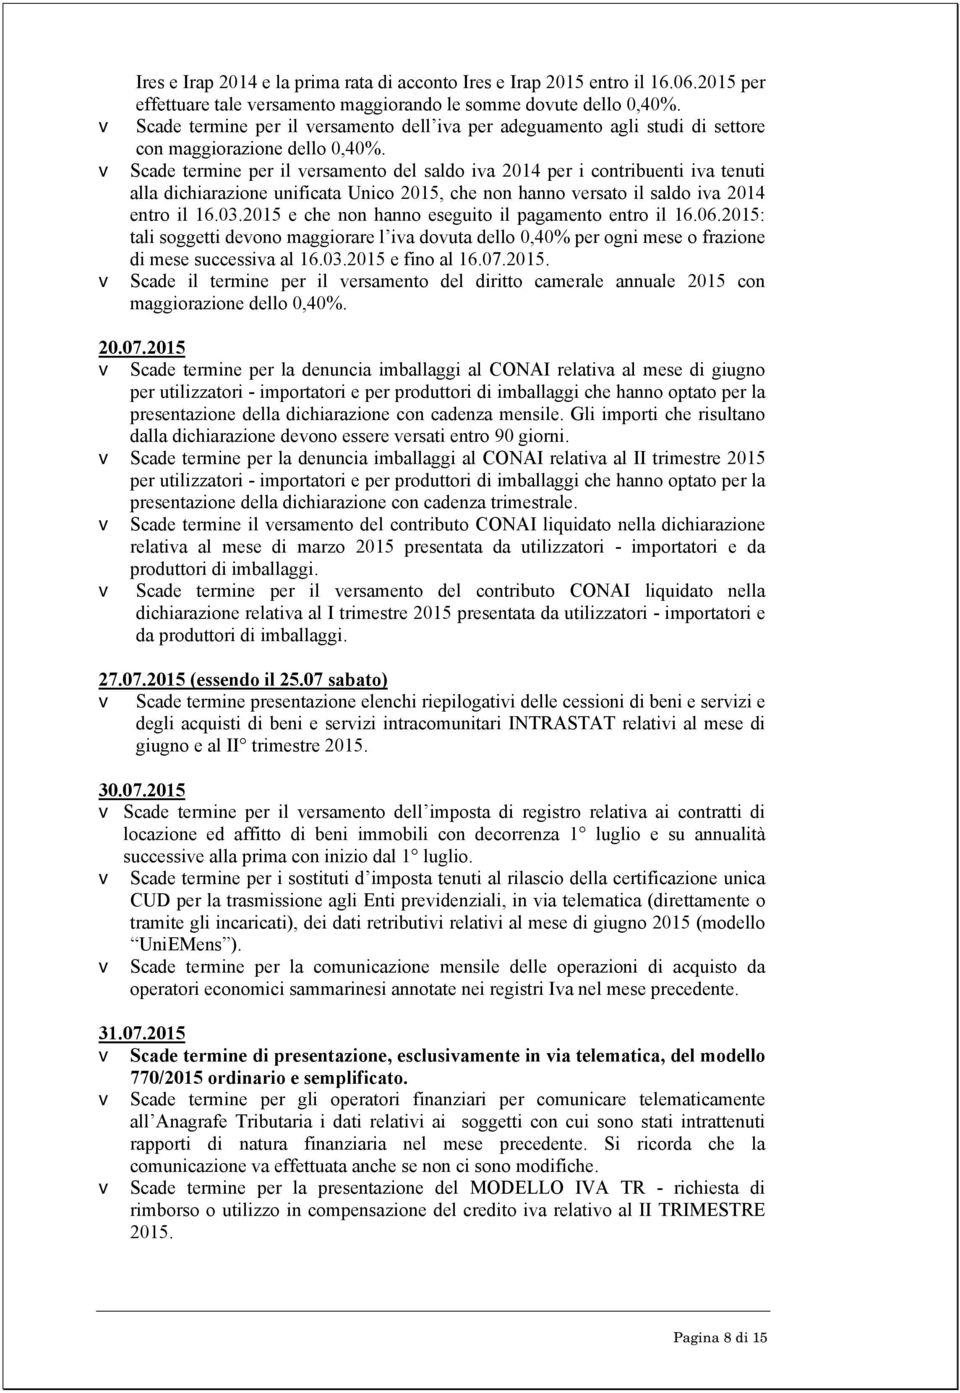 v Scade termine per il versamento del saldo iva 2014 per i contribuenti iva tenuti alla dichiarazione unificata Unico 2015, che non hanno versato il saldo iva 2014 entro il 16.03.